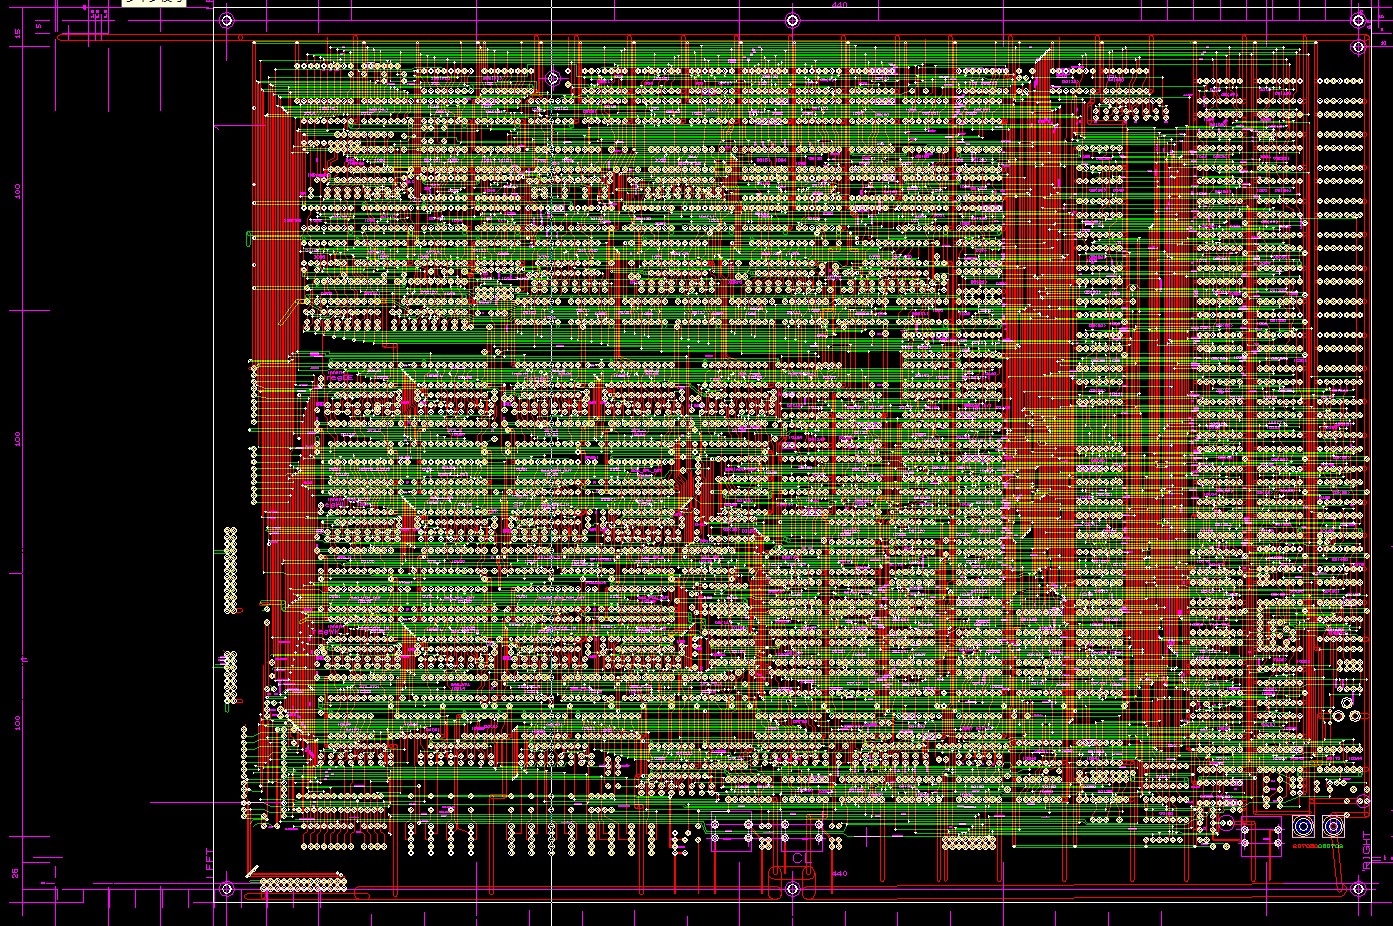 新品プレクスタTLC NAND PX-512S3C 2.5インチ 512GB